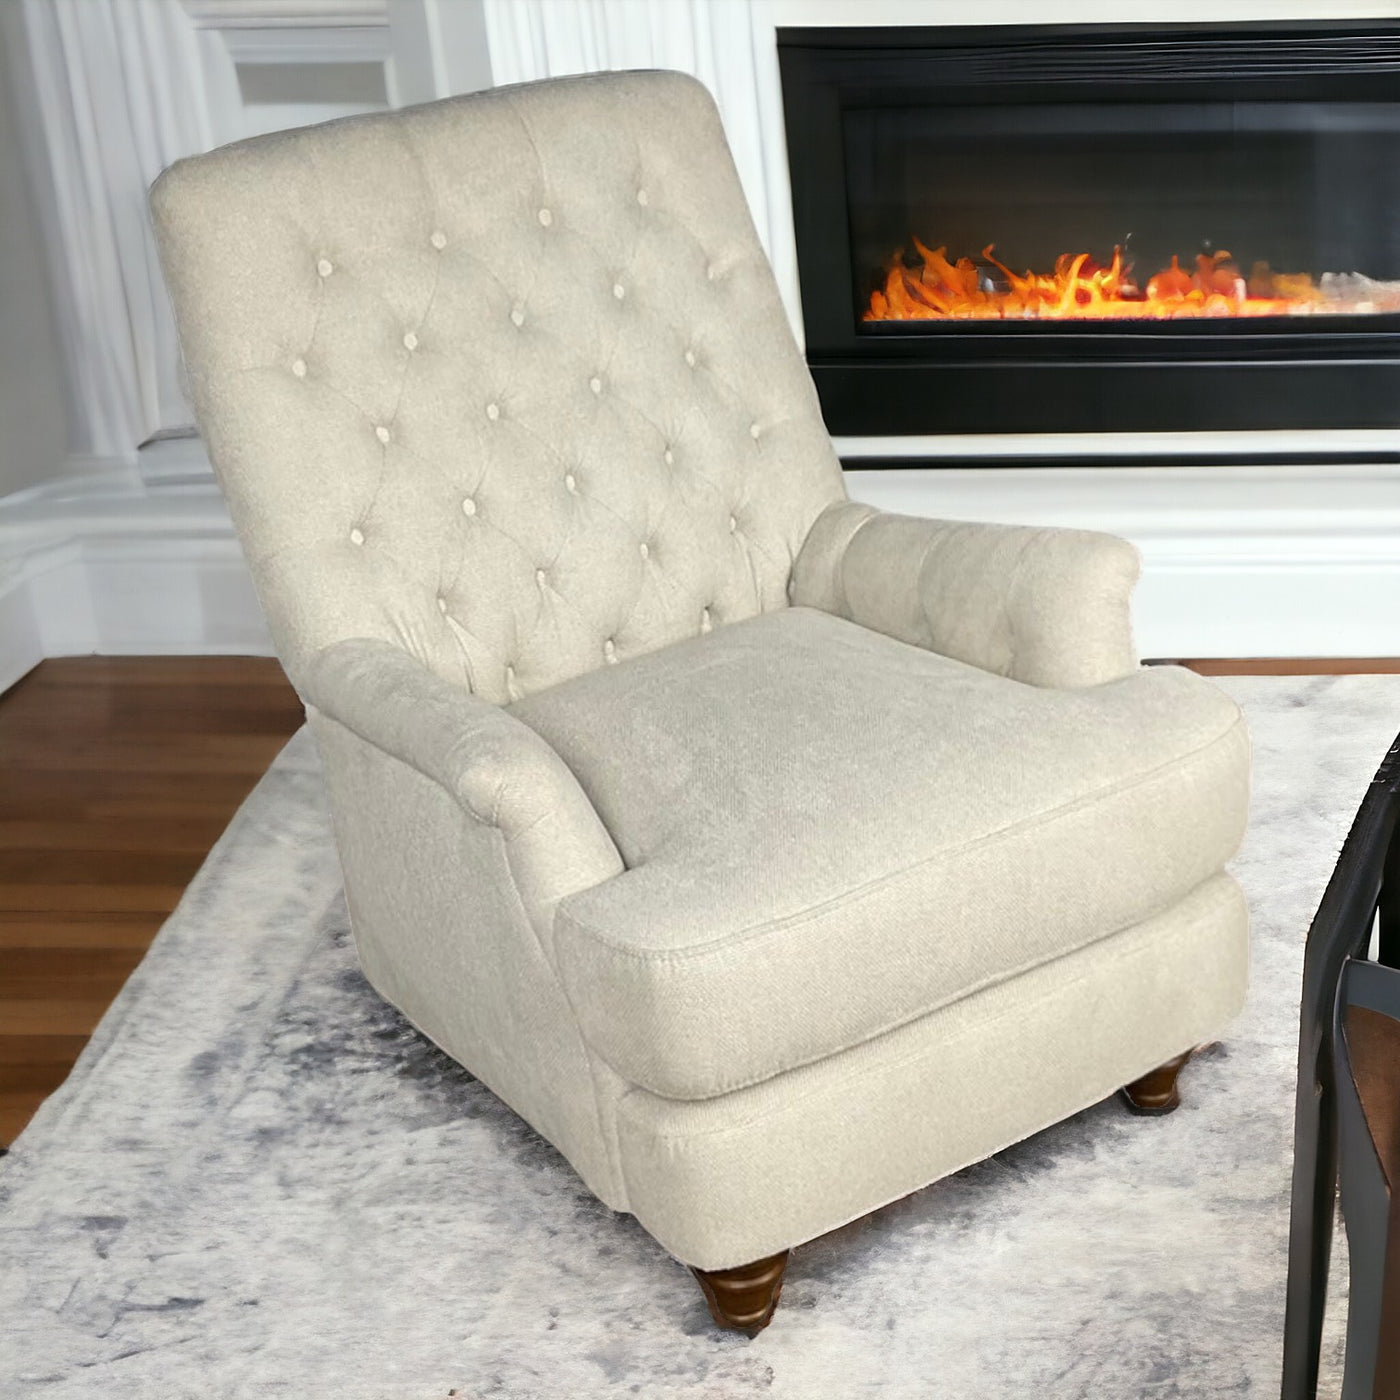 Buckingham Chair Beige - Future Classics Furniture